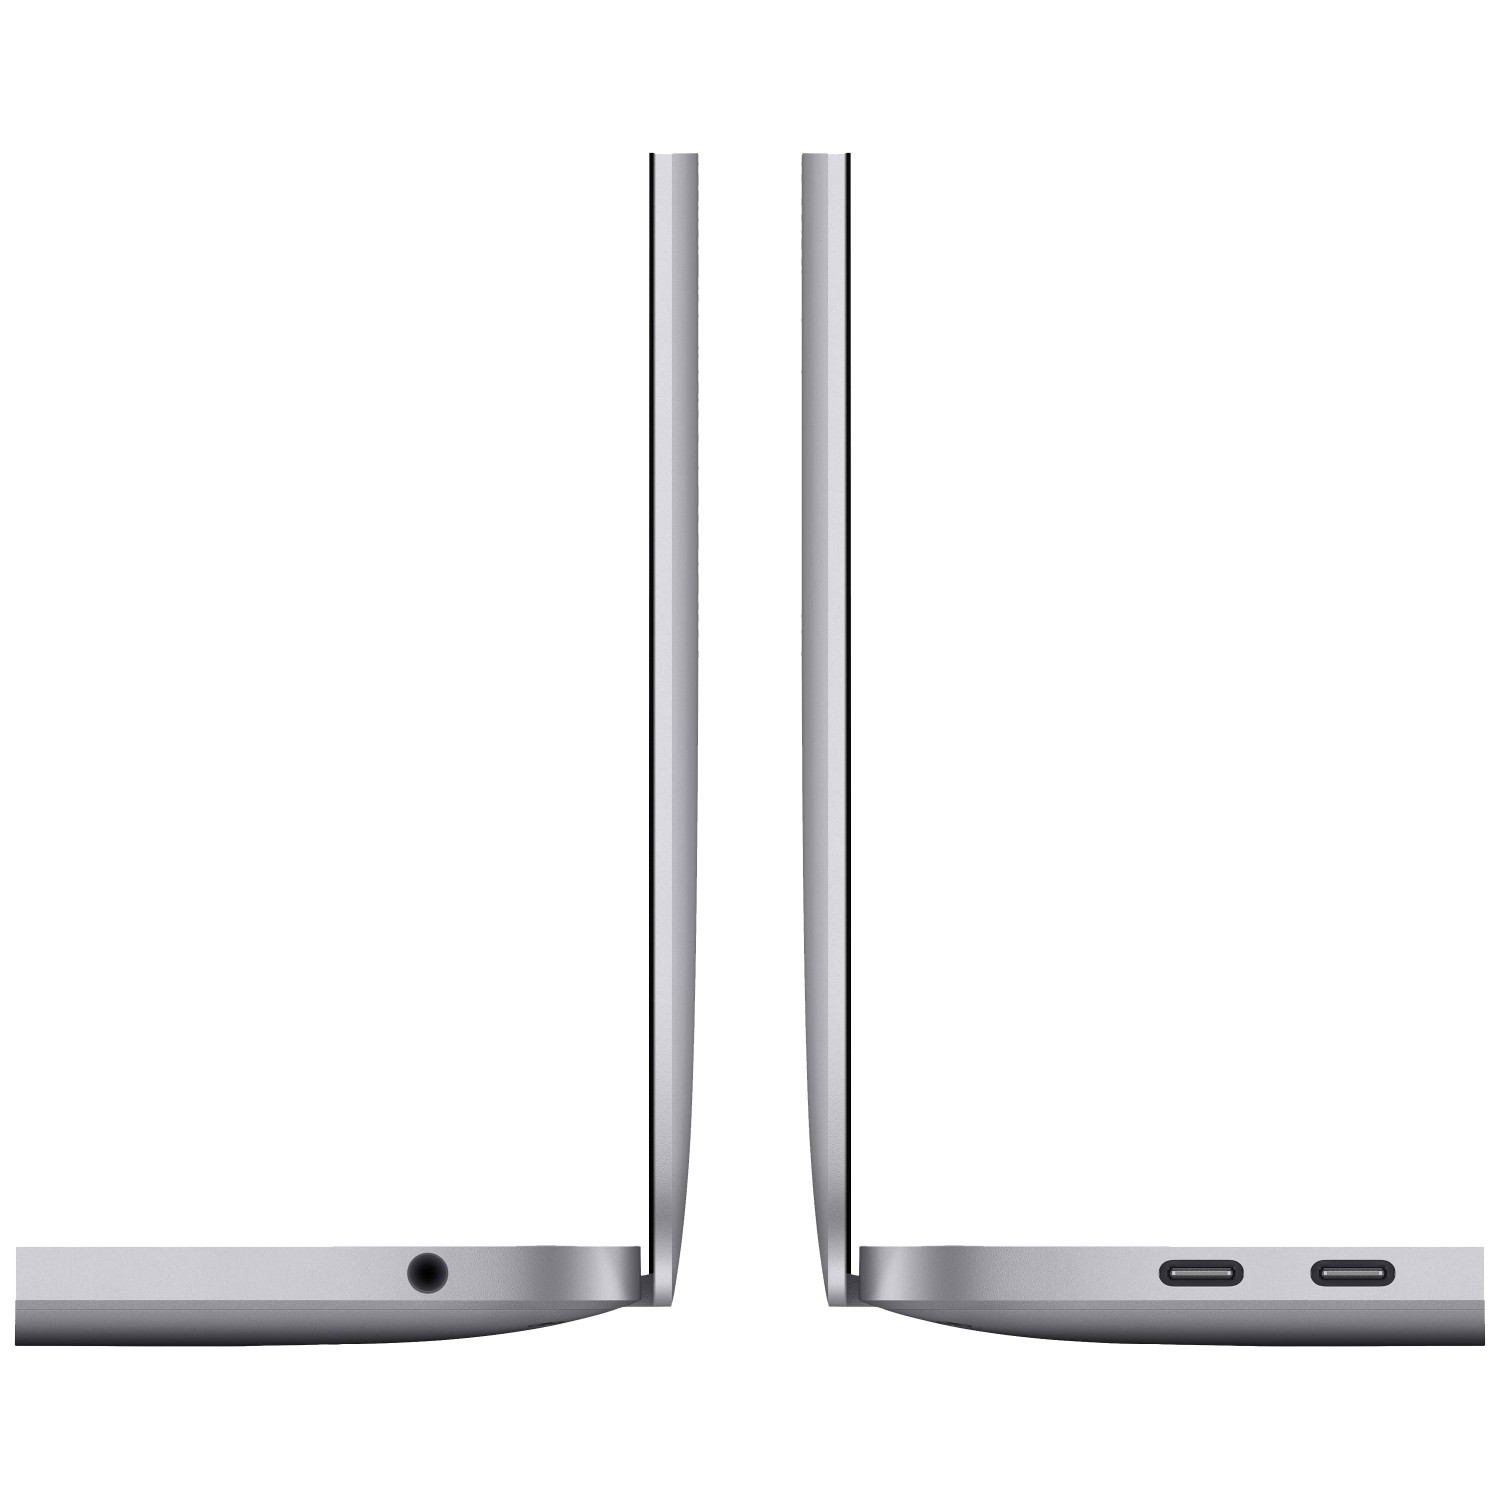 لپ تاپ Apple MacBook Pro 13 2020 CTO - Space Grey - A-4